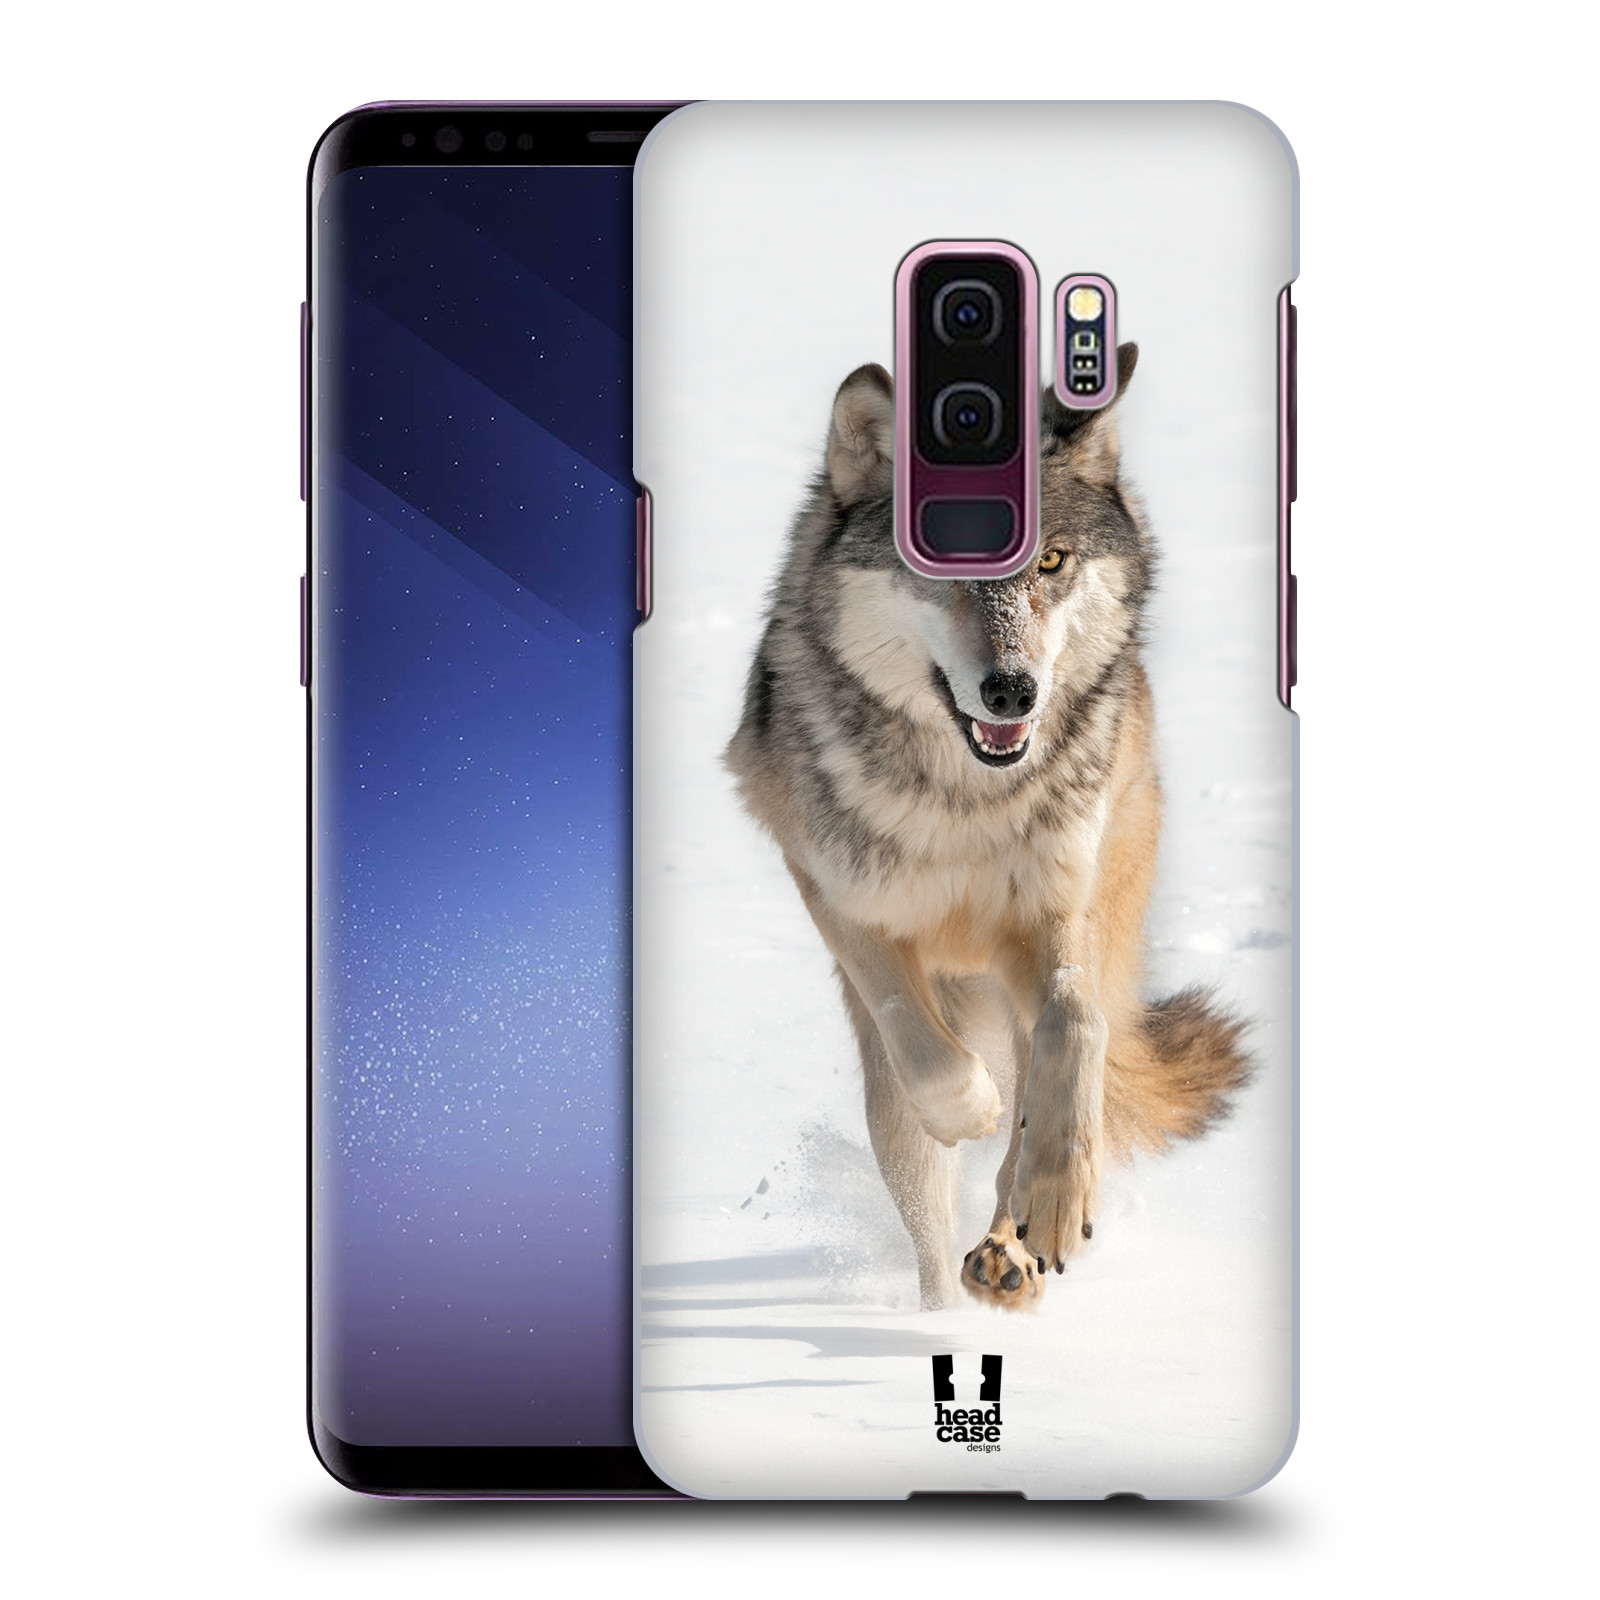 Zadní obal pro mobil Samsung Galaxy S9 PLUS - HEAD CASE - Svět zvířat divoký vlk